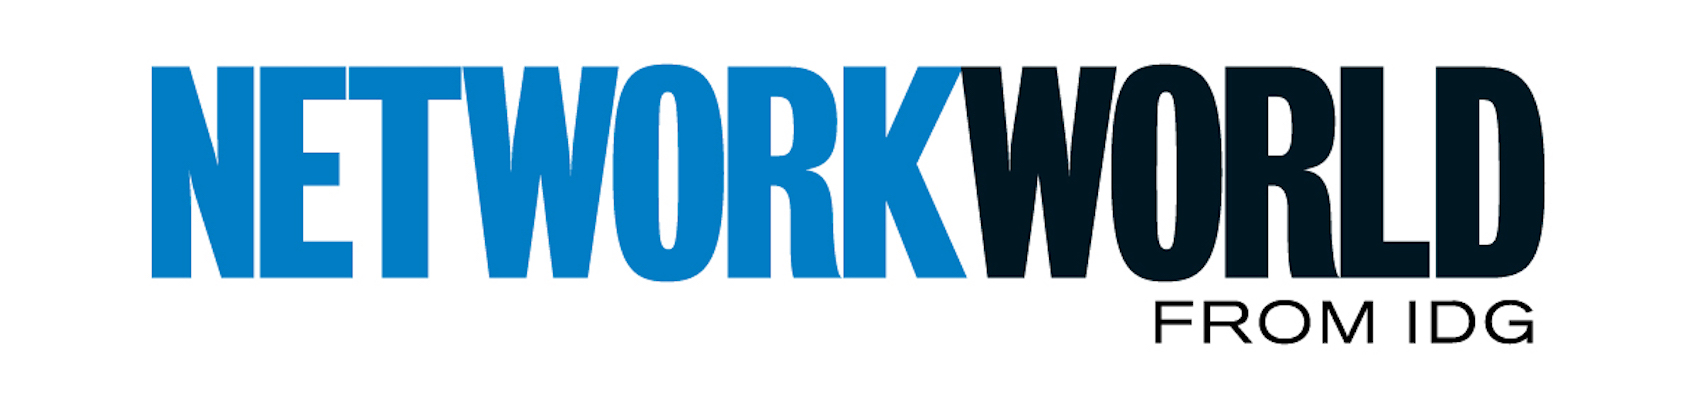 networkworld-logo.jpg